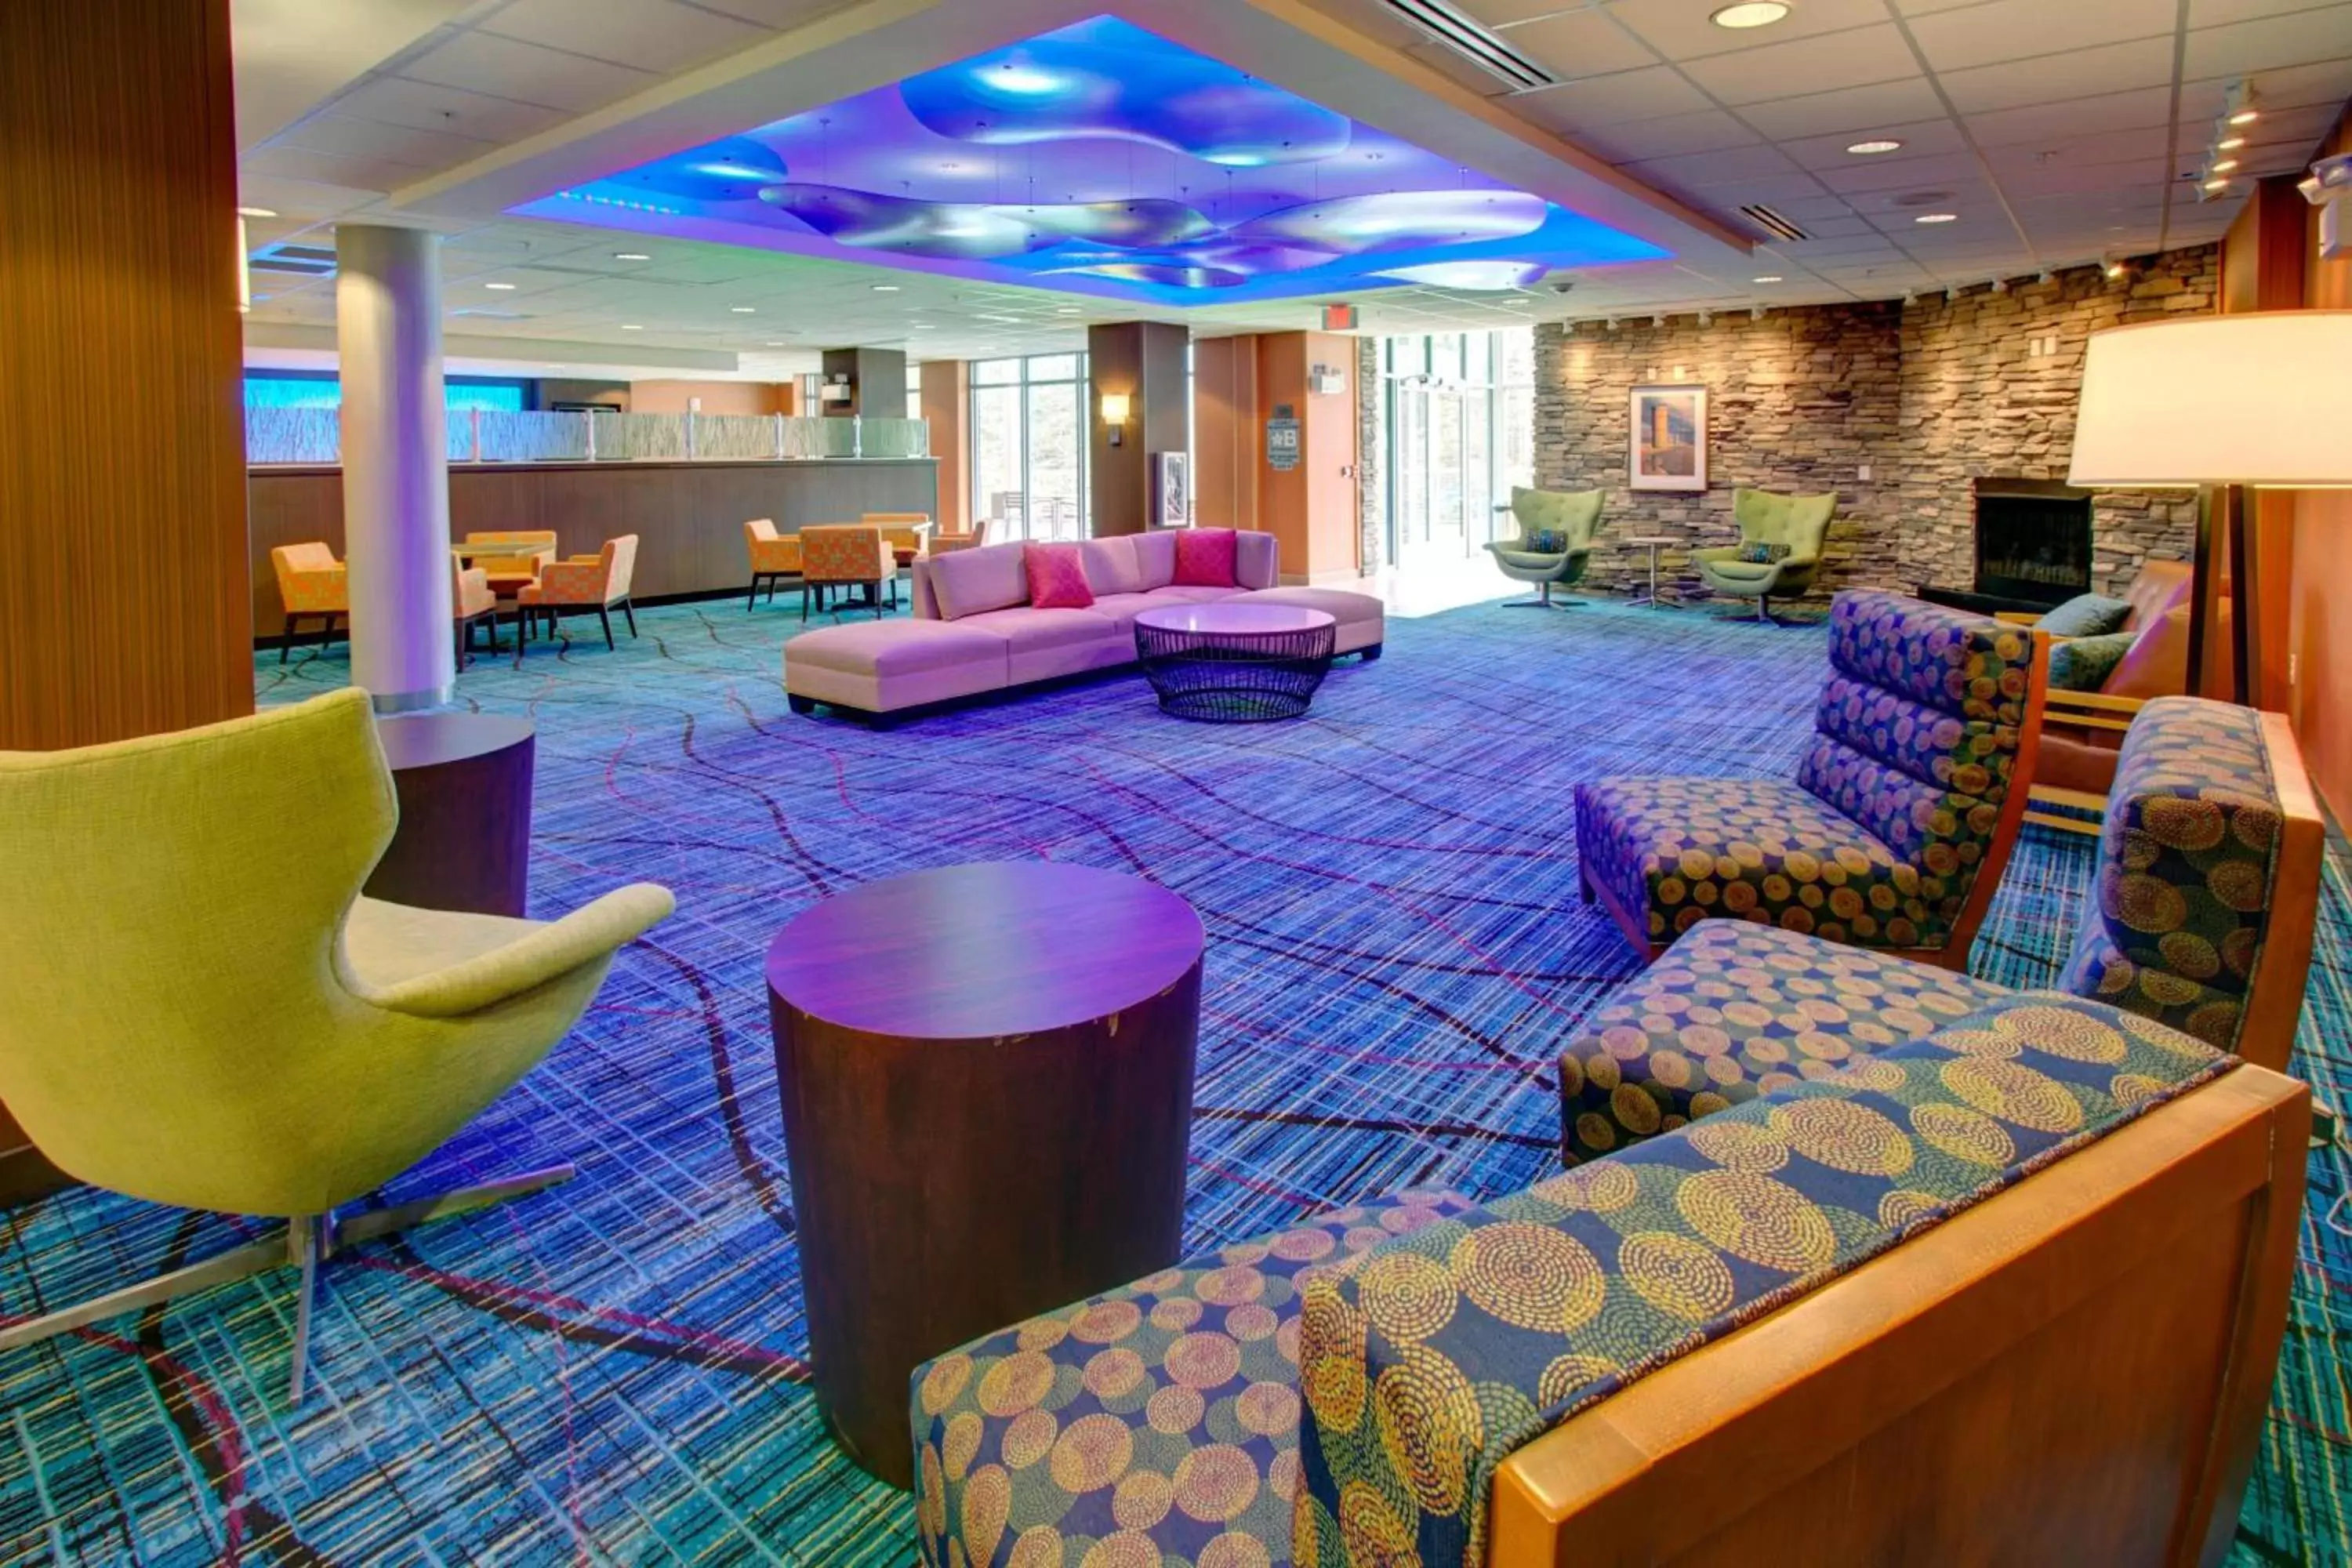 Lobby or reception in Fairfield Inn & Suites by Marriott Rehoboth Beach